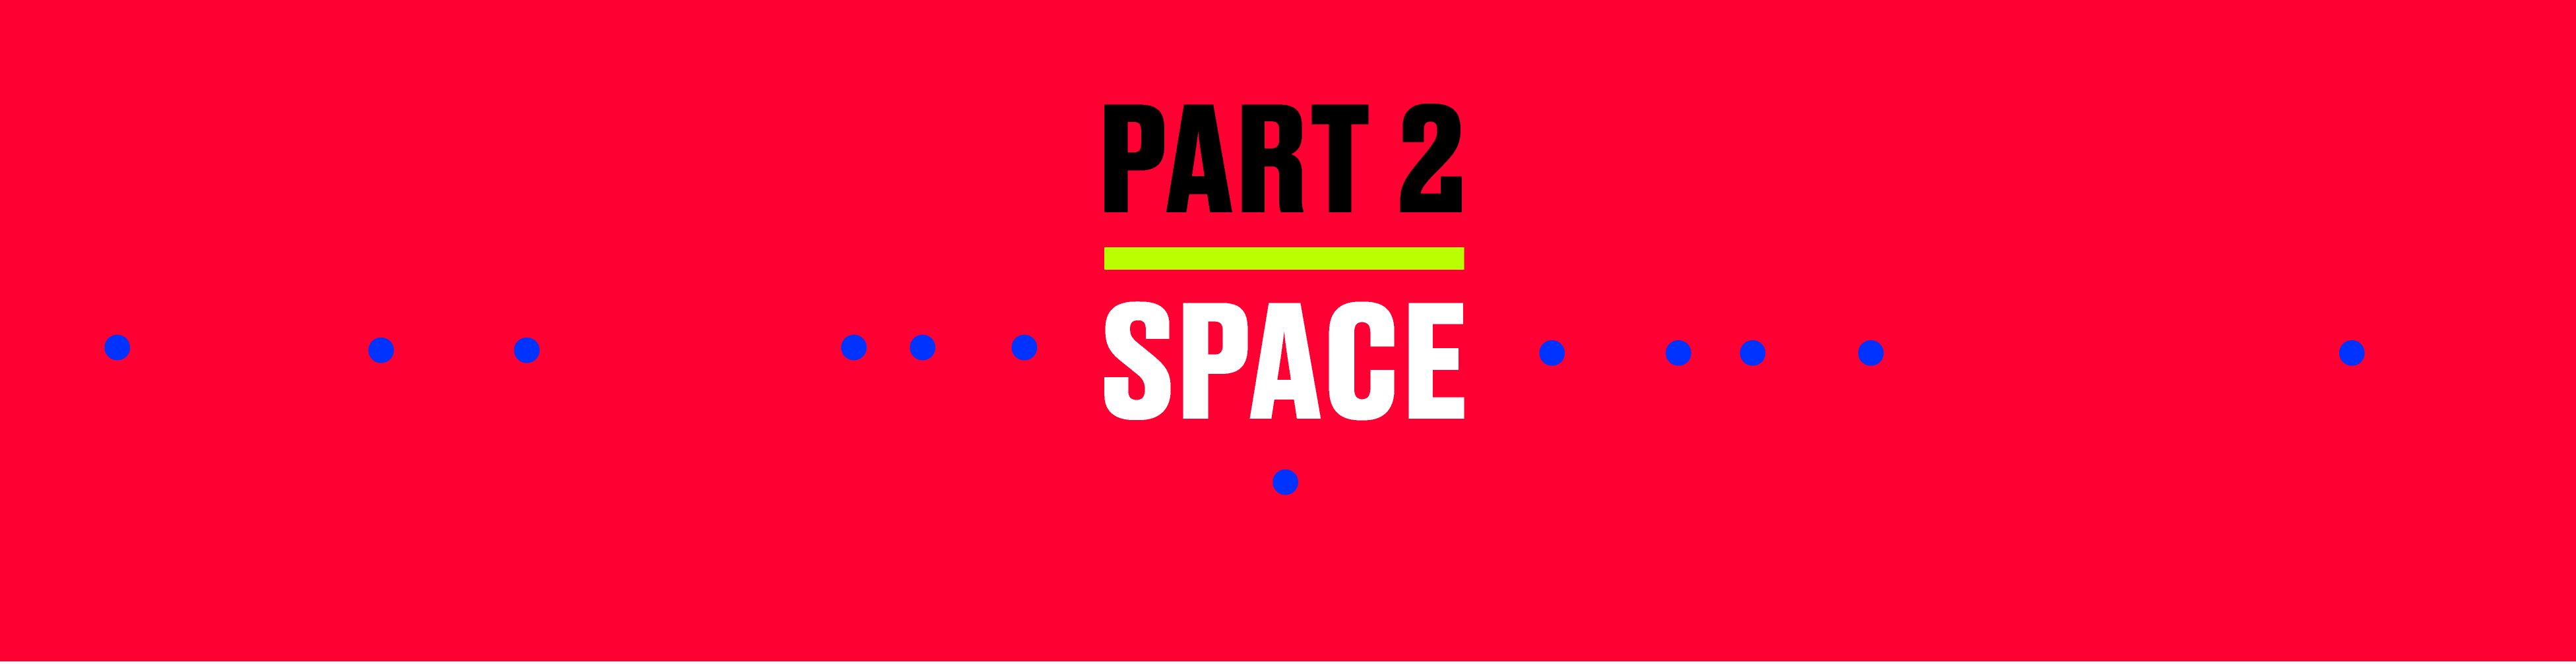 Part 2: Space